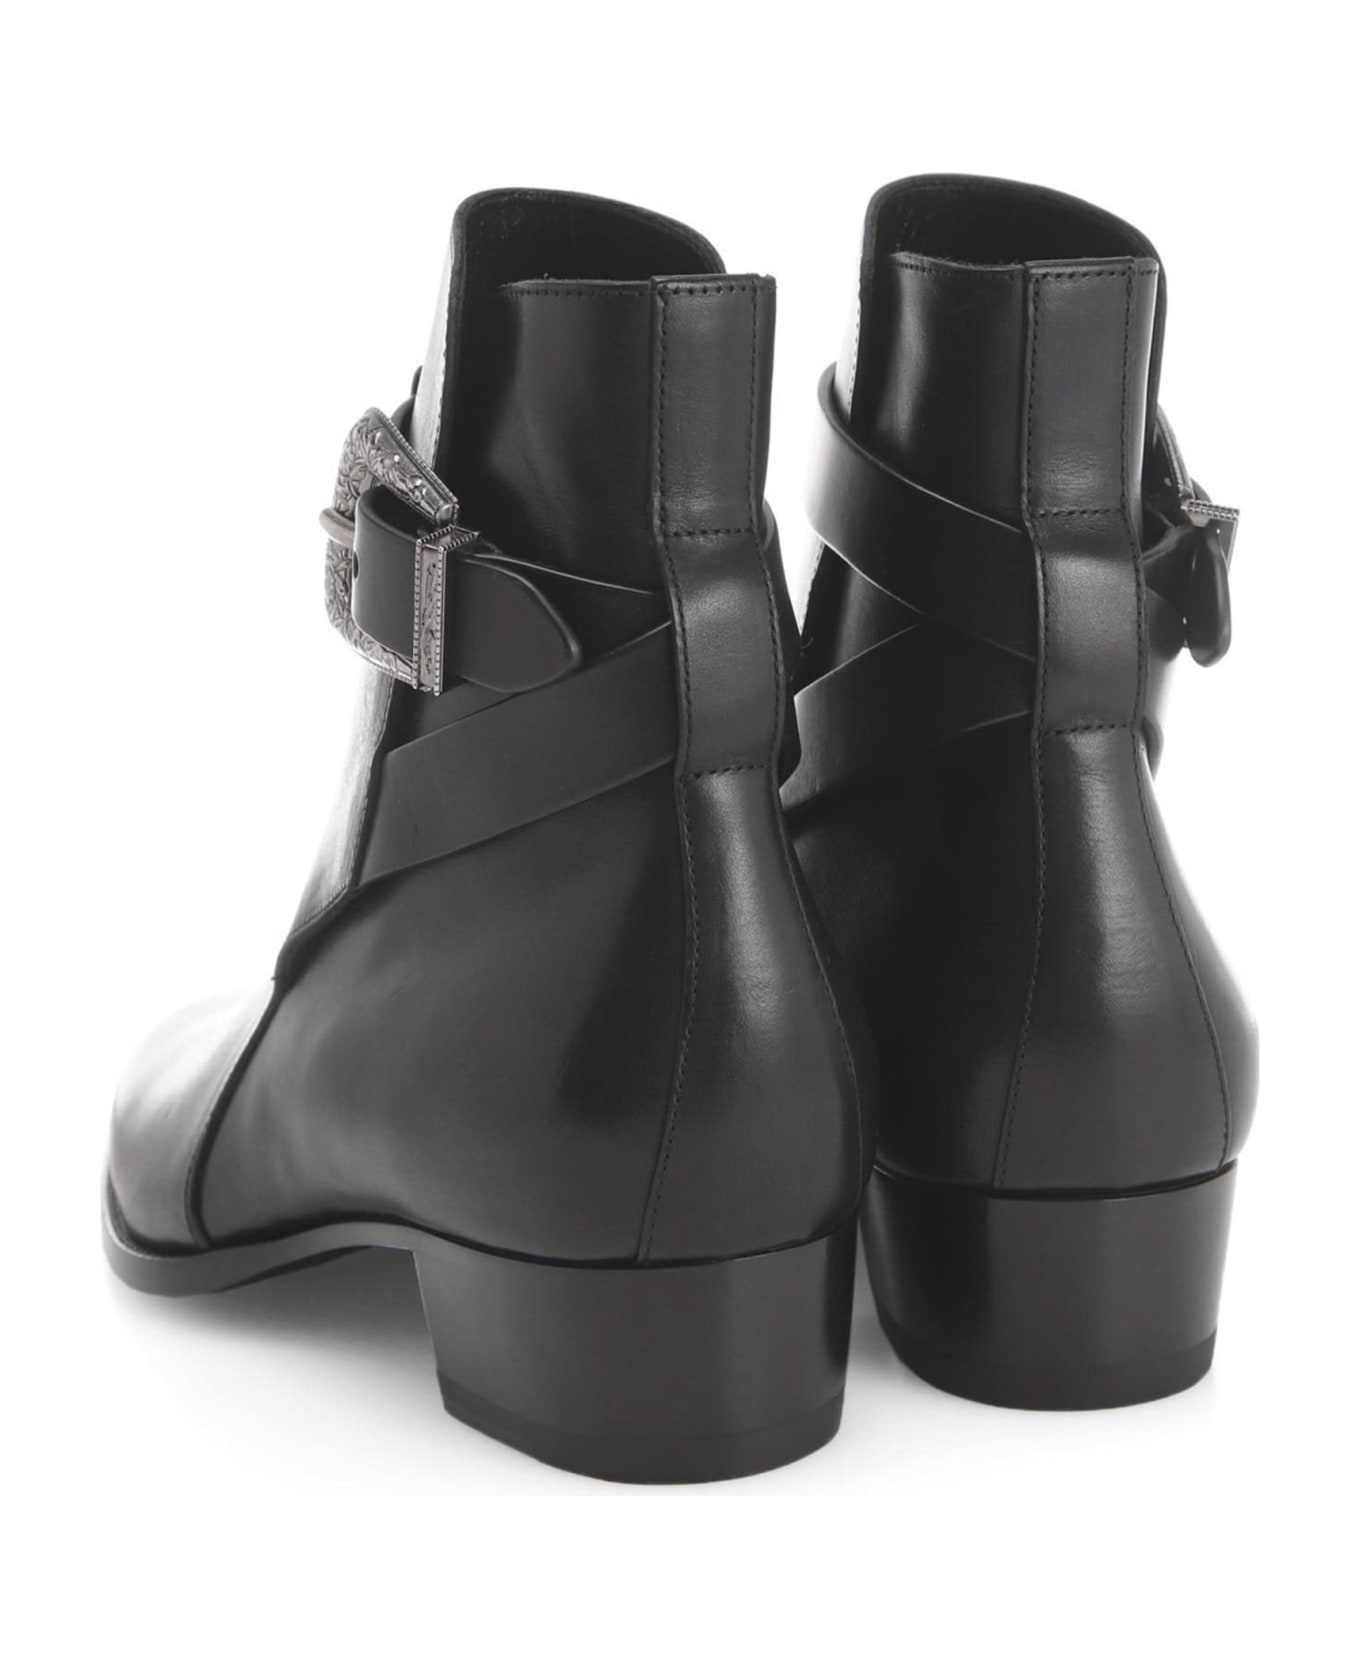 Saint Laurent Pink Ankle Boots - Black